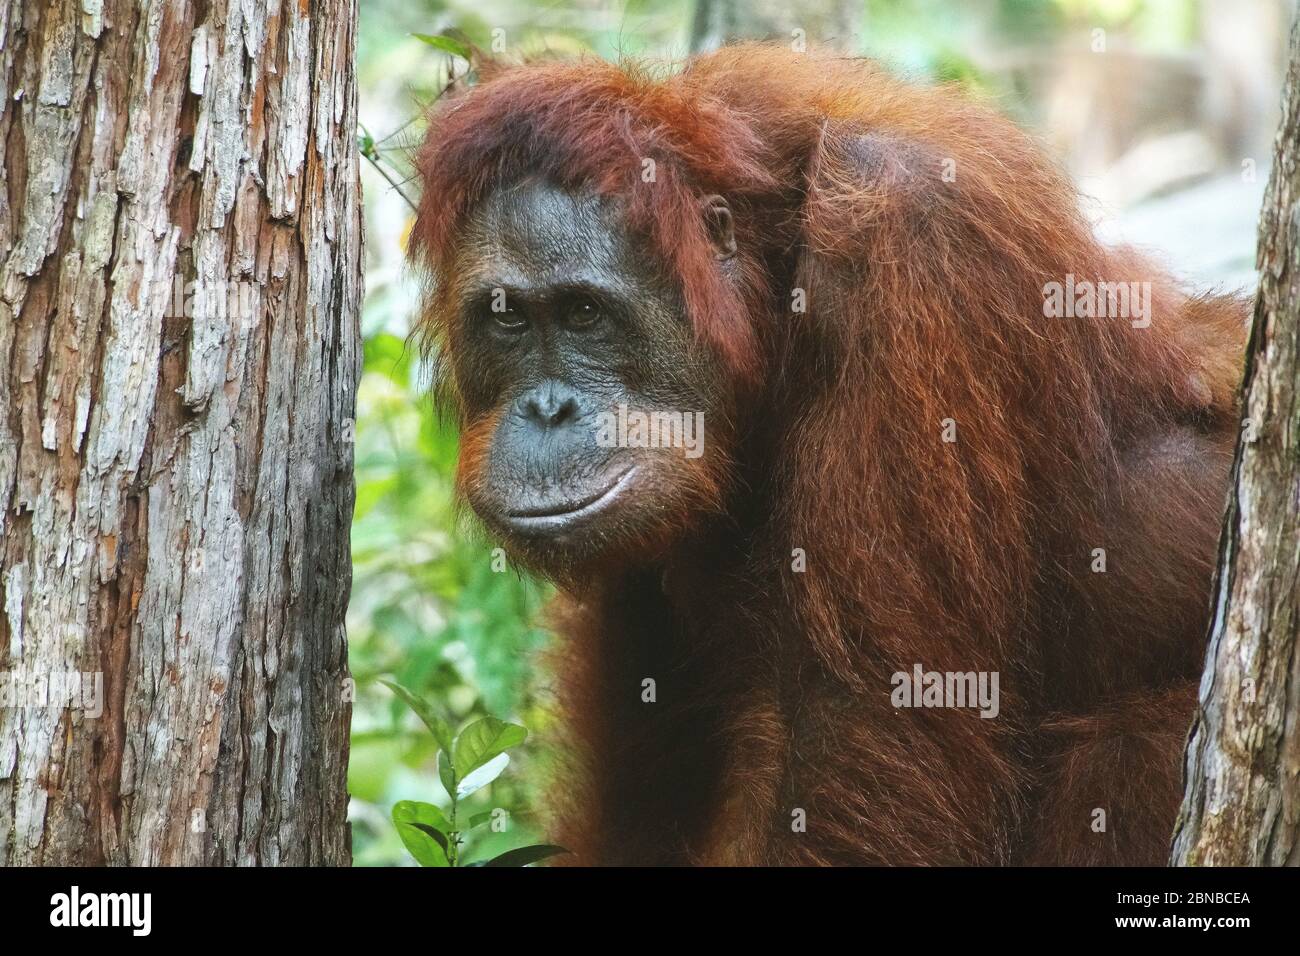 Bornean orangutan (Pongo pygmaeus pygmaeus), female, Indonesia, Borneo Stock Photo